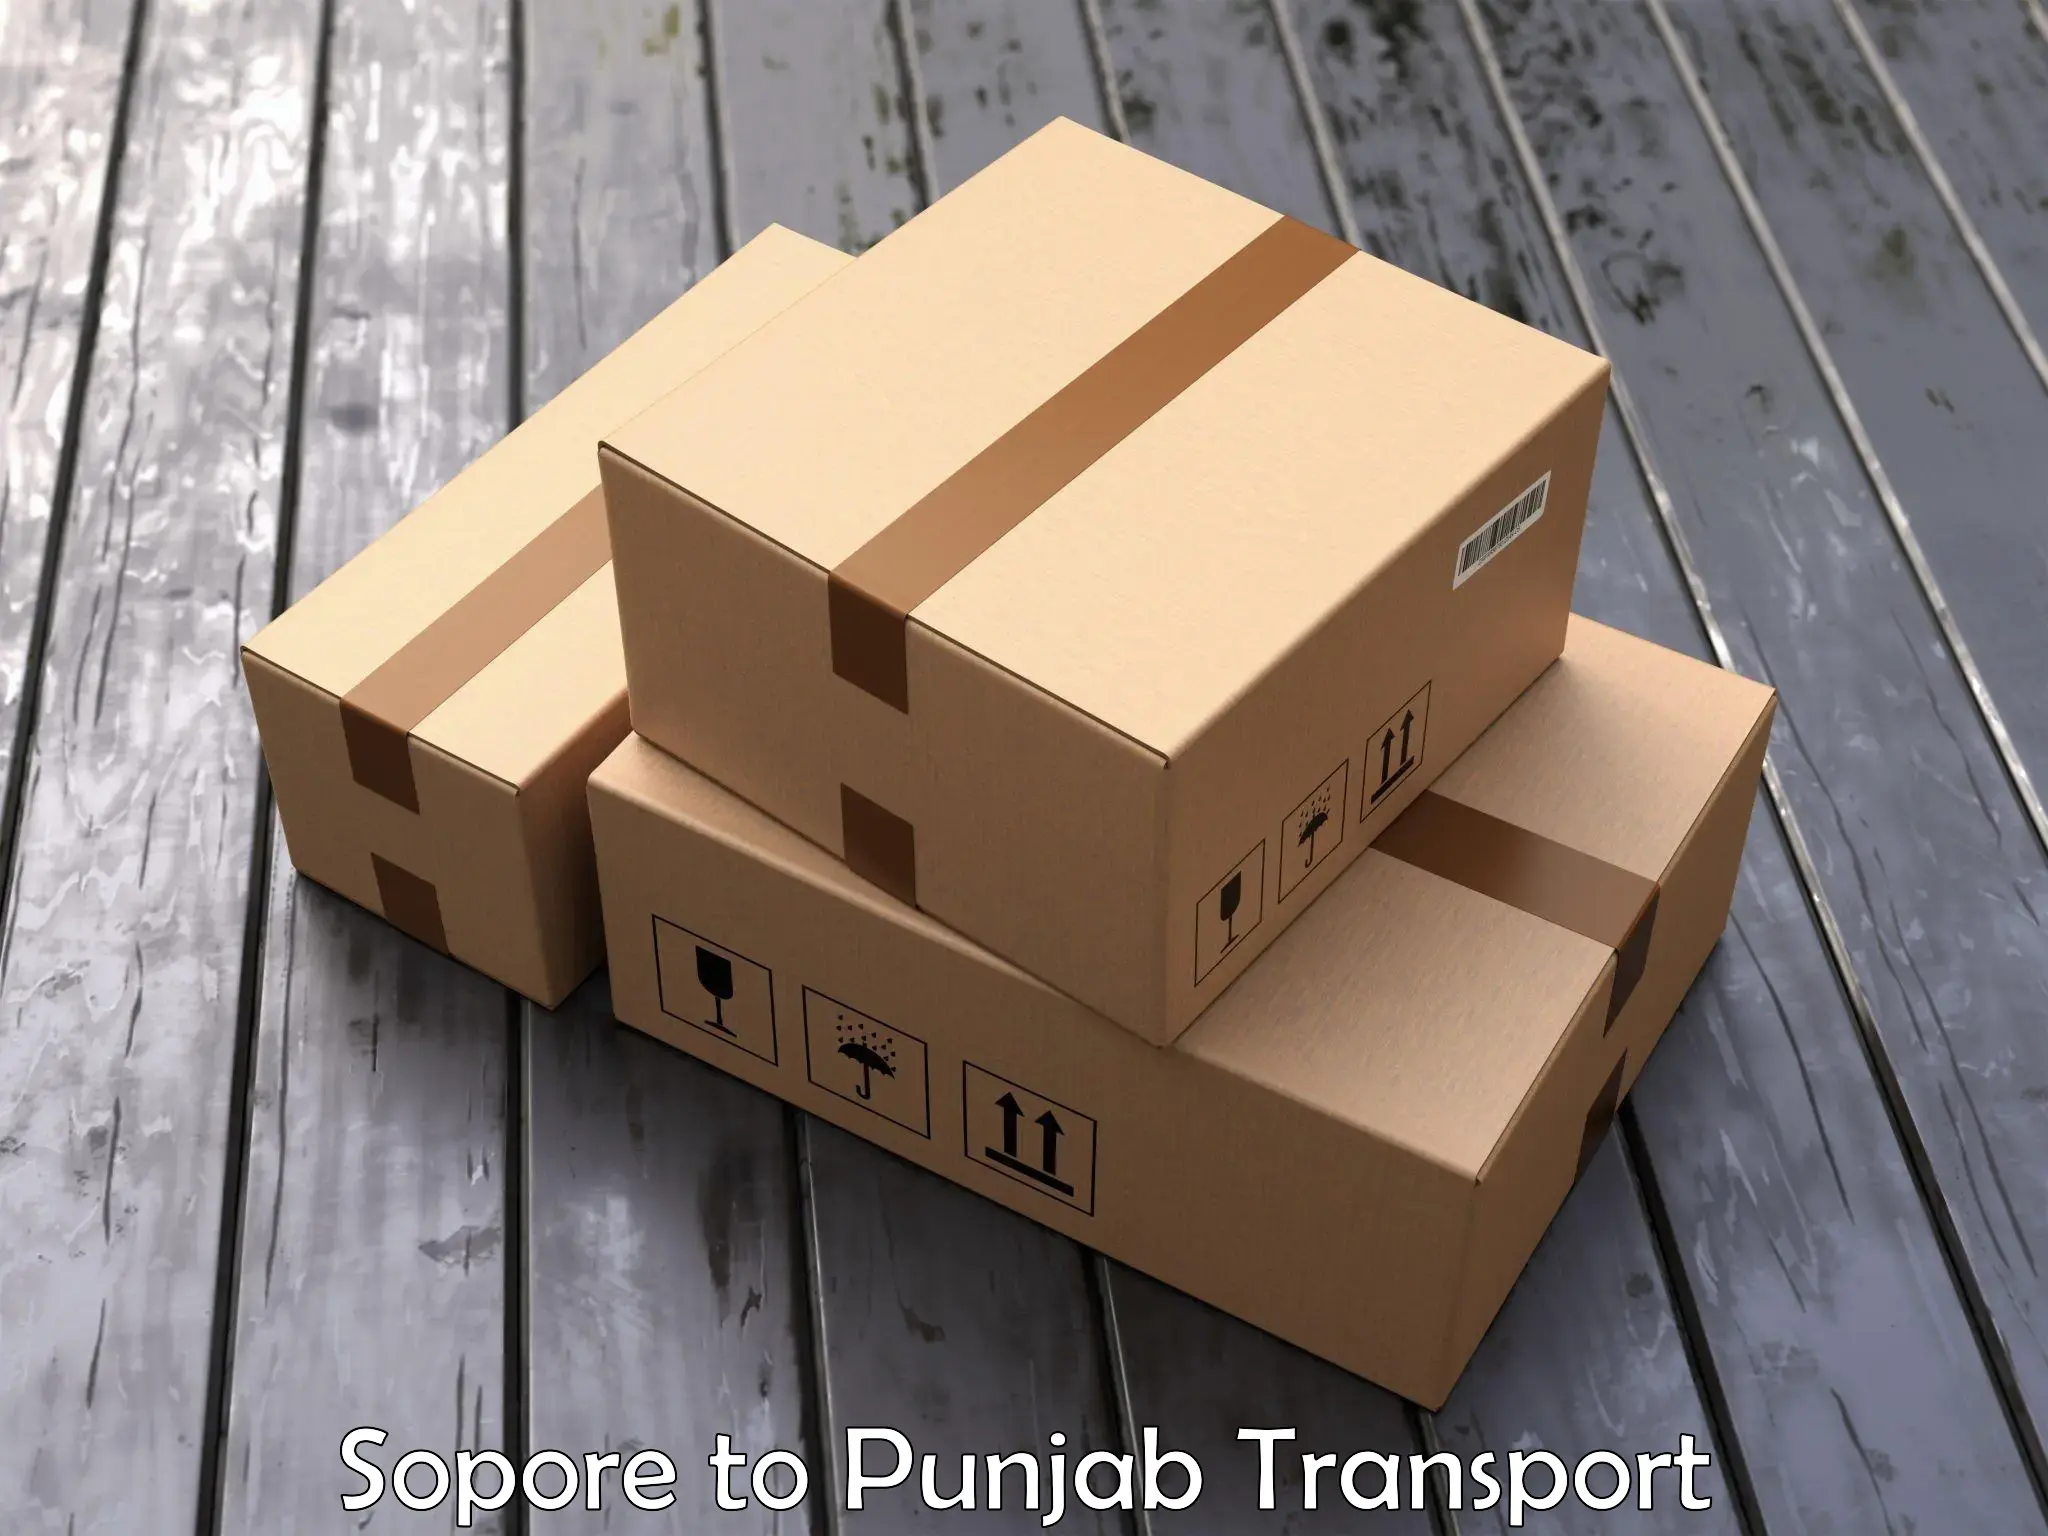 Furniture transport service Sopore to Punjab